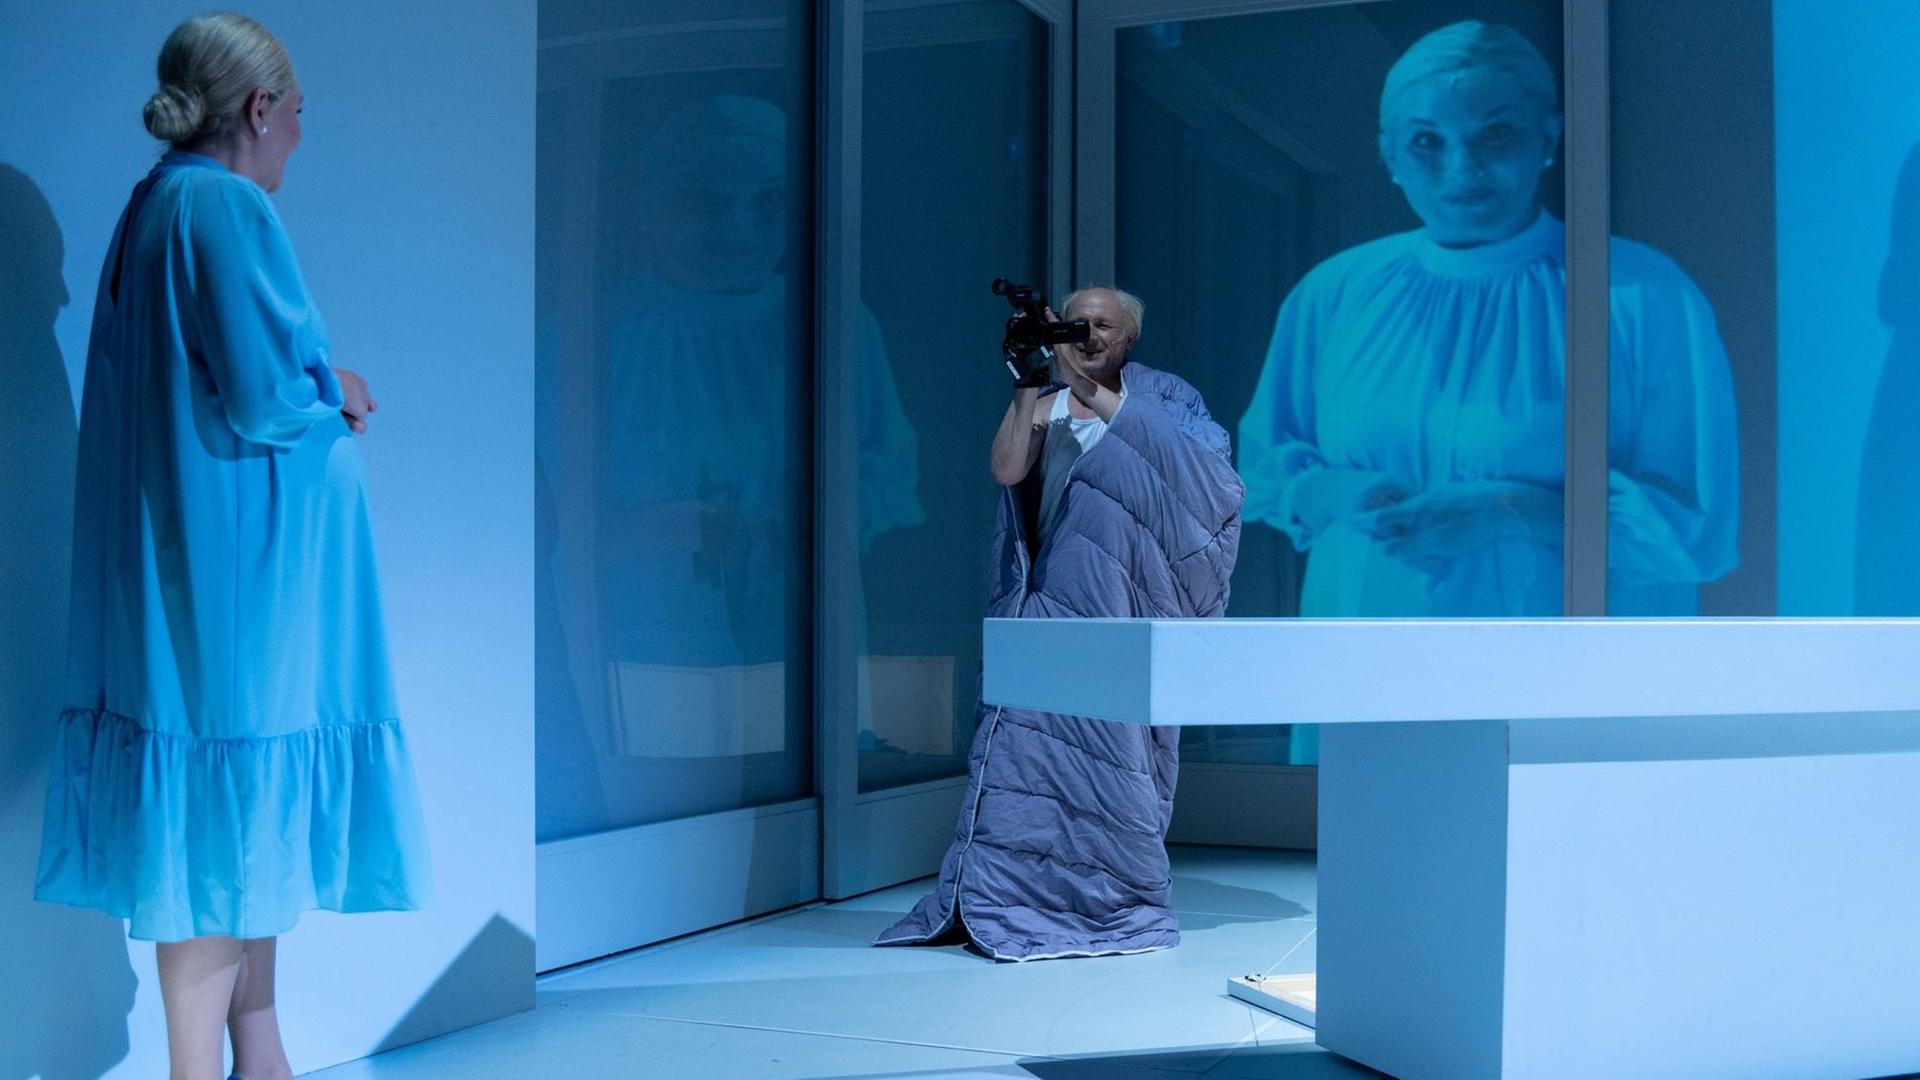 Auf einer hellblau ausgeleuchteten Theaterbühne filmt ein Mann eine Frau aus gewisser Entfernung. Ihr Bild wird im Hintergrund an die Wand projiziert.